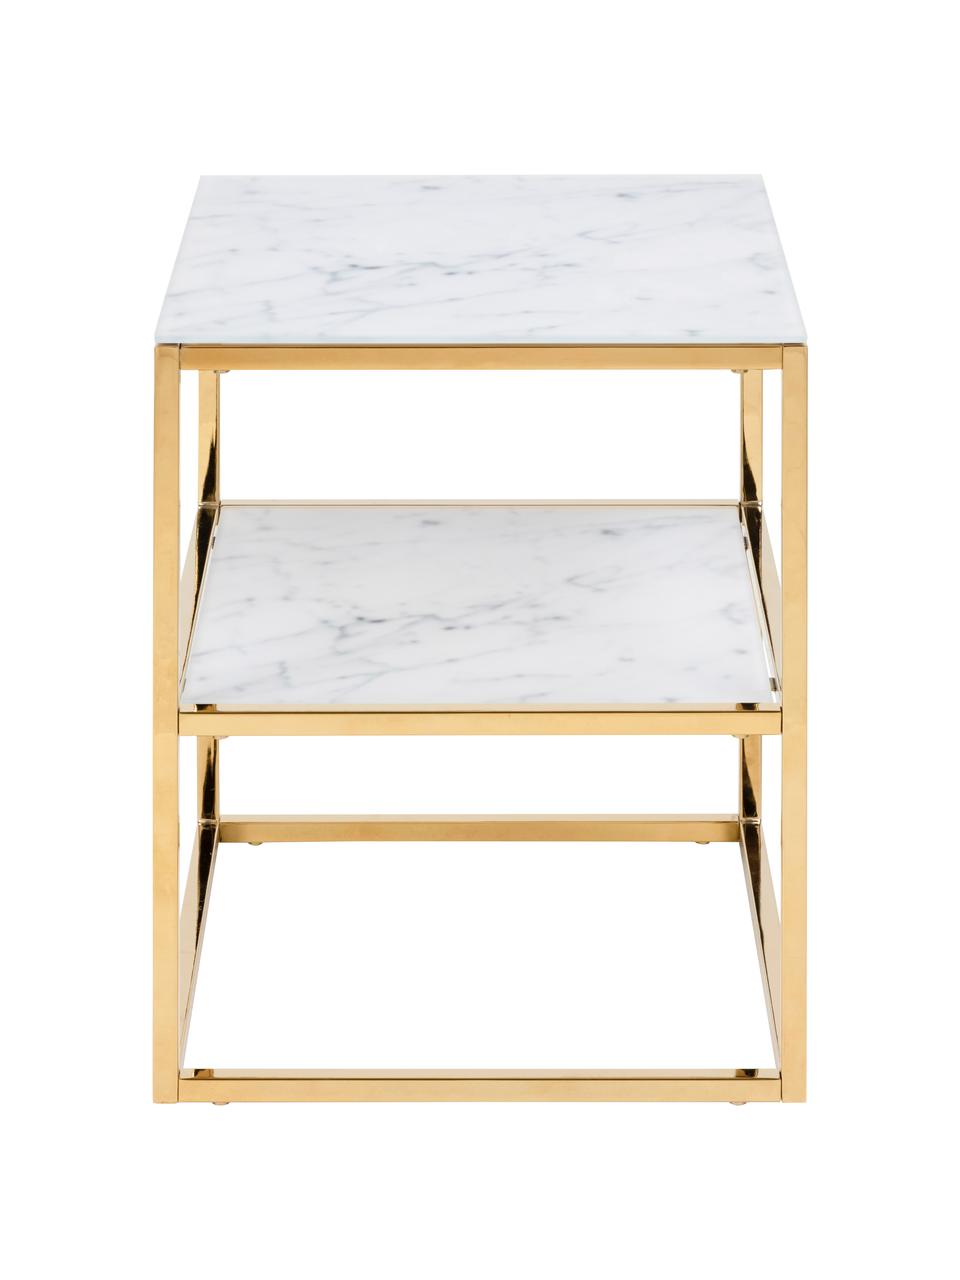 Odkládací stolek s mramorovanou skleněnou deskou Aruba, Mramorový vzhled, bílá, zlatá, Š 40 cm, V 51 cm